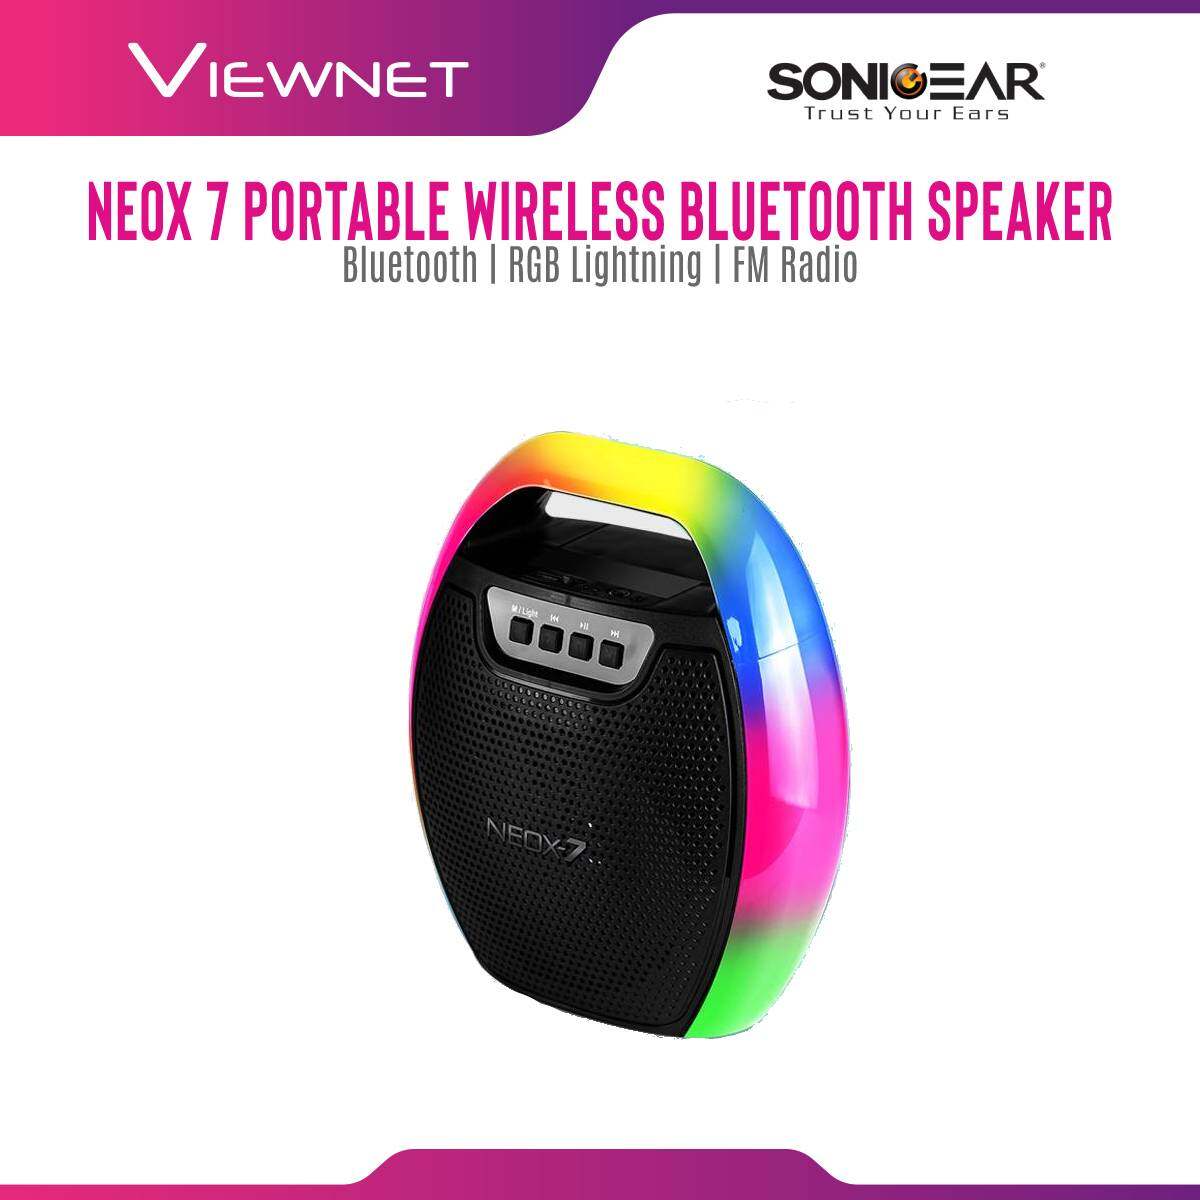 SonicGear Neox 7 Portable Wireless Bluetooth Speaker